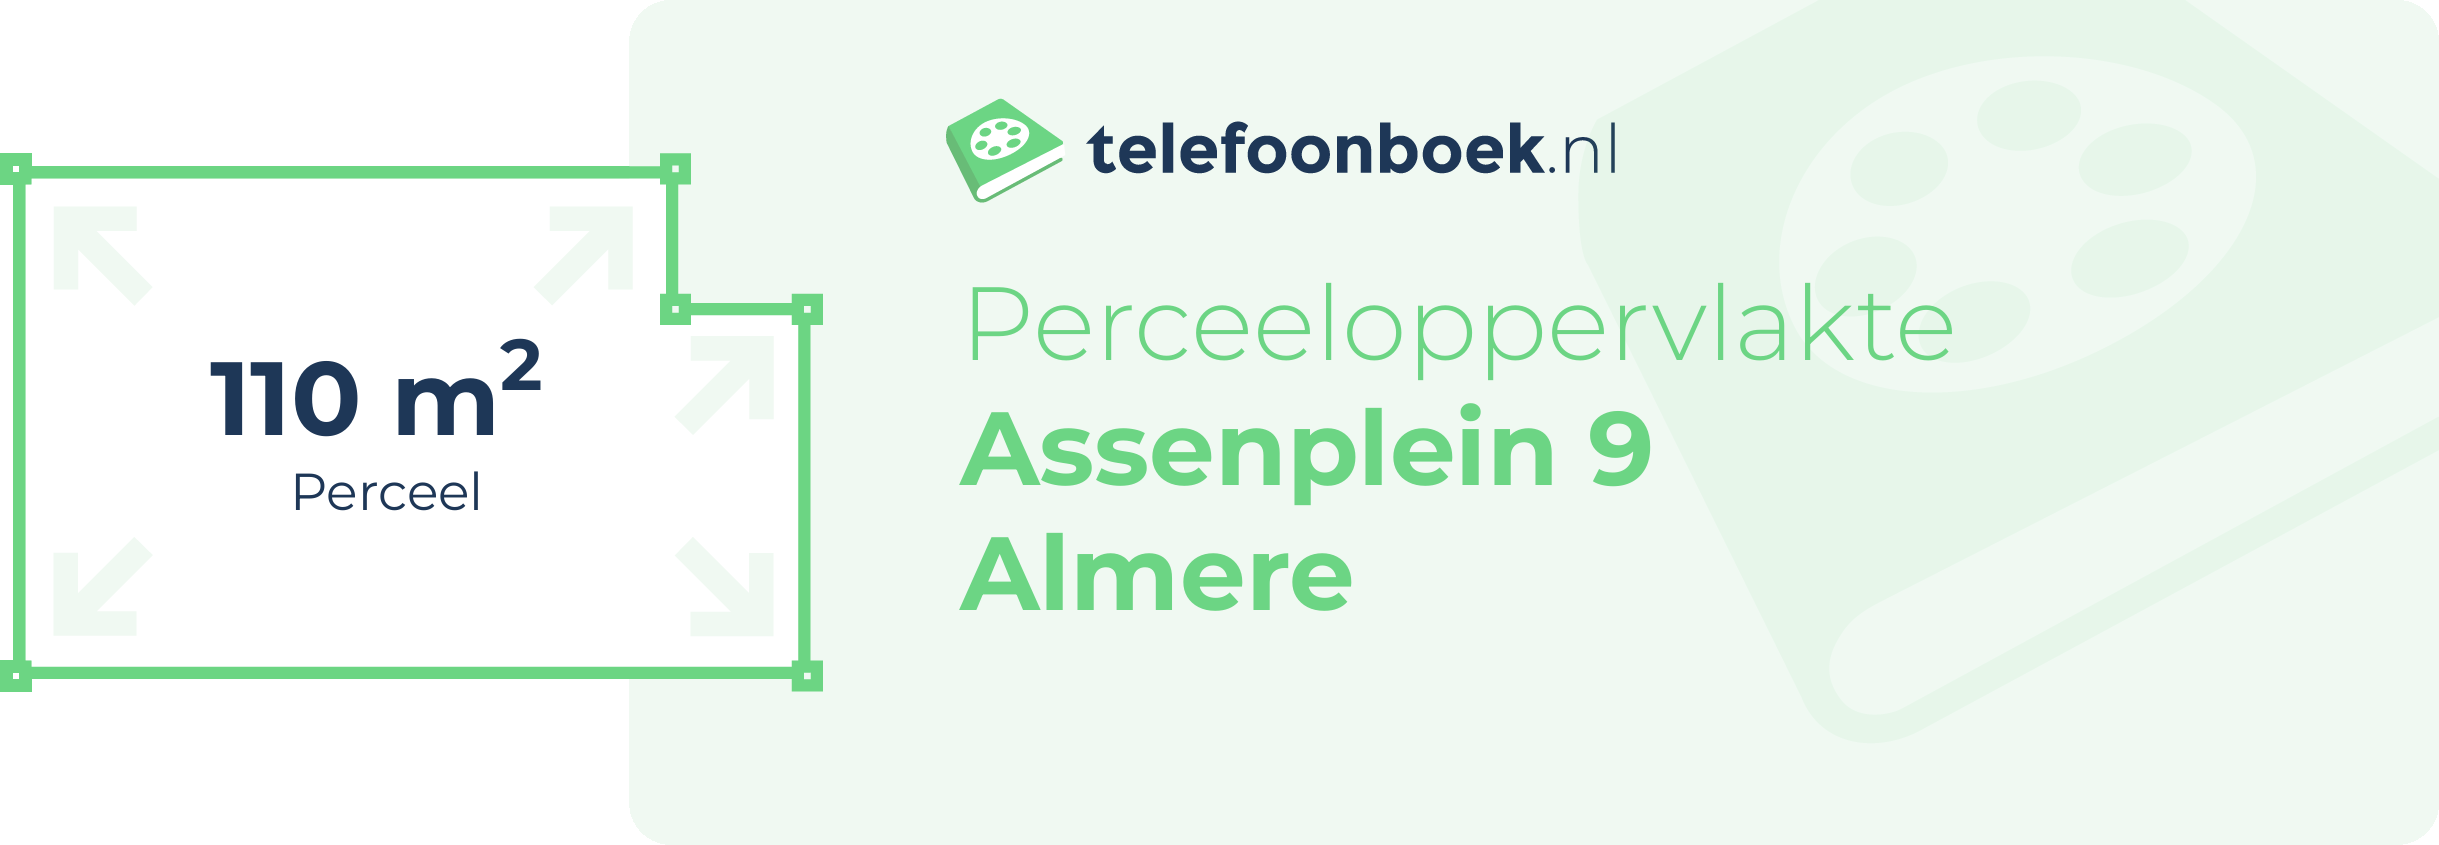 Perceeloppervlakte Assenplein 9 Almere